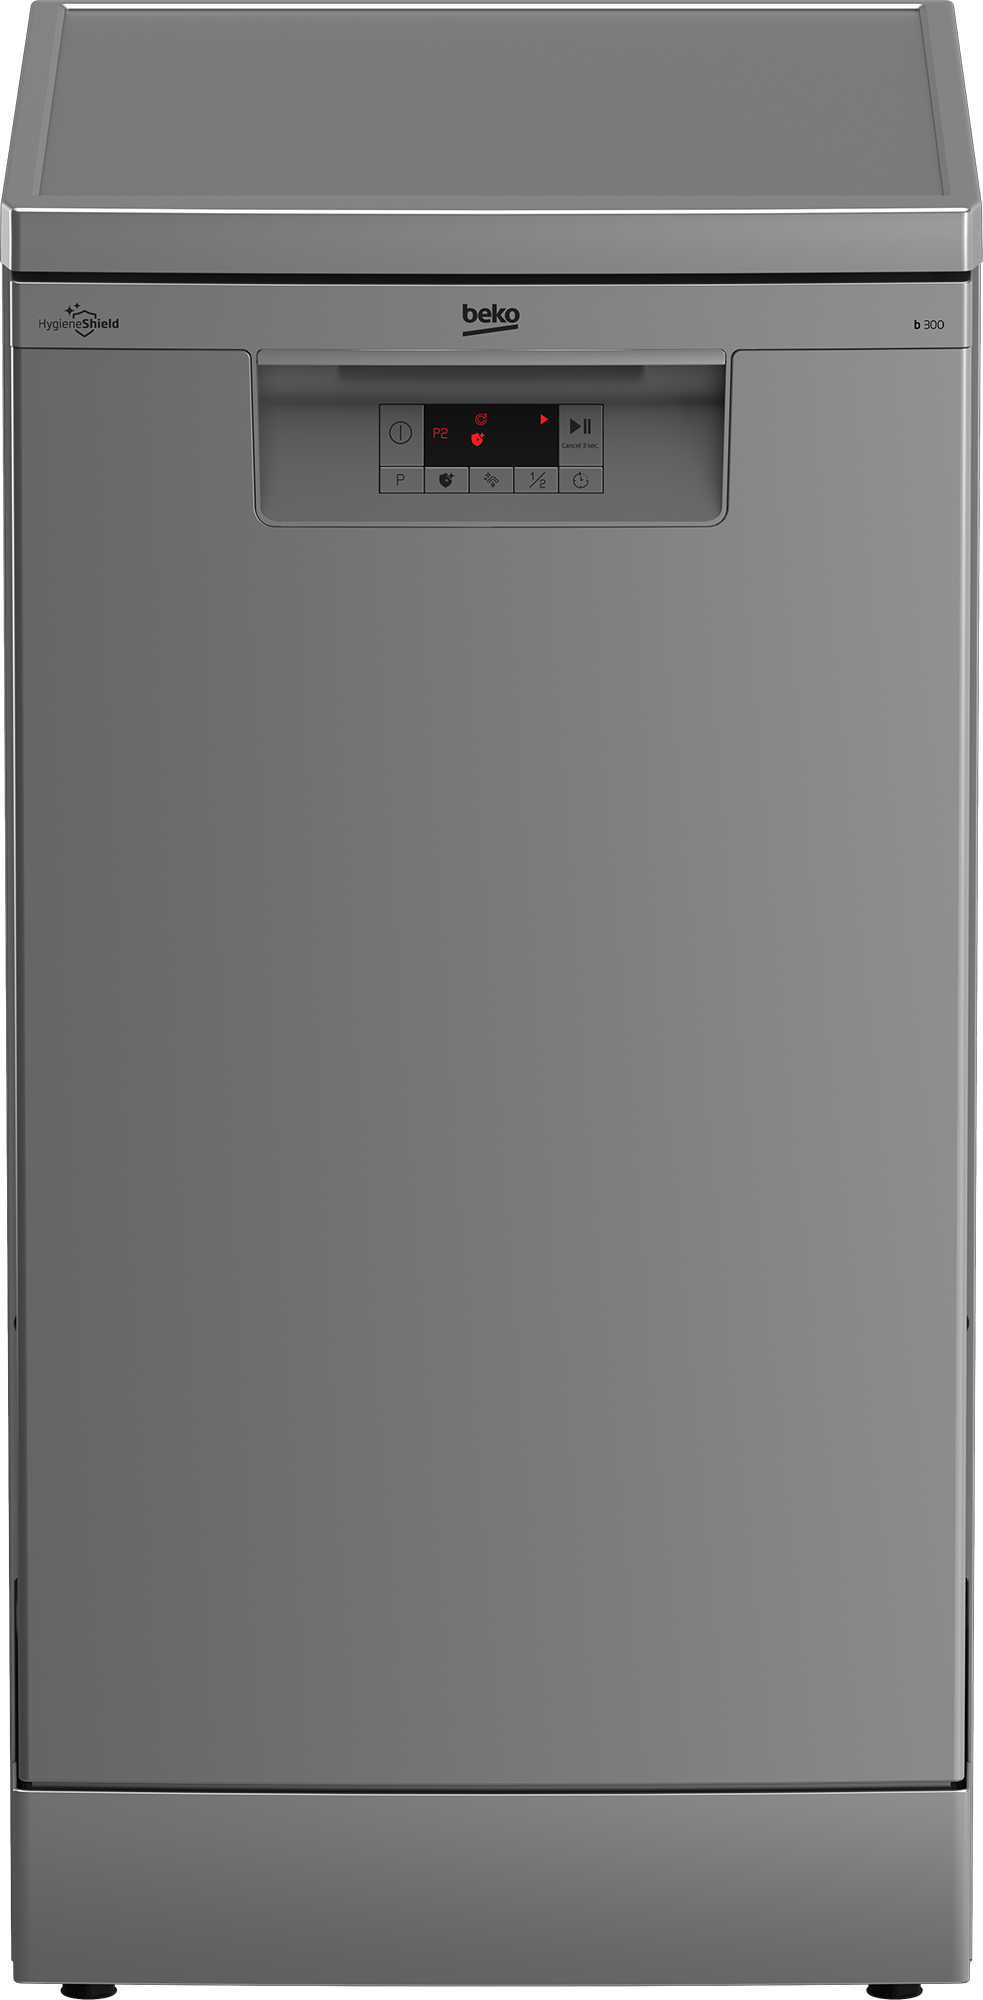 Посудомоечная машина Beko BDFS15020S серебристый посудомоечная машина beko bdfs15020s серебристый